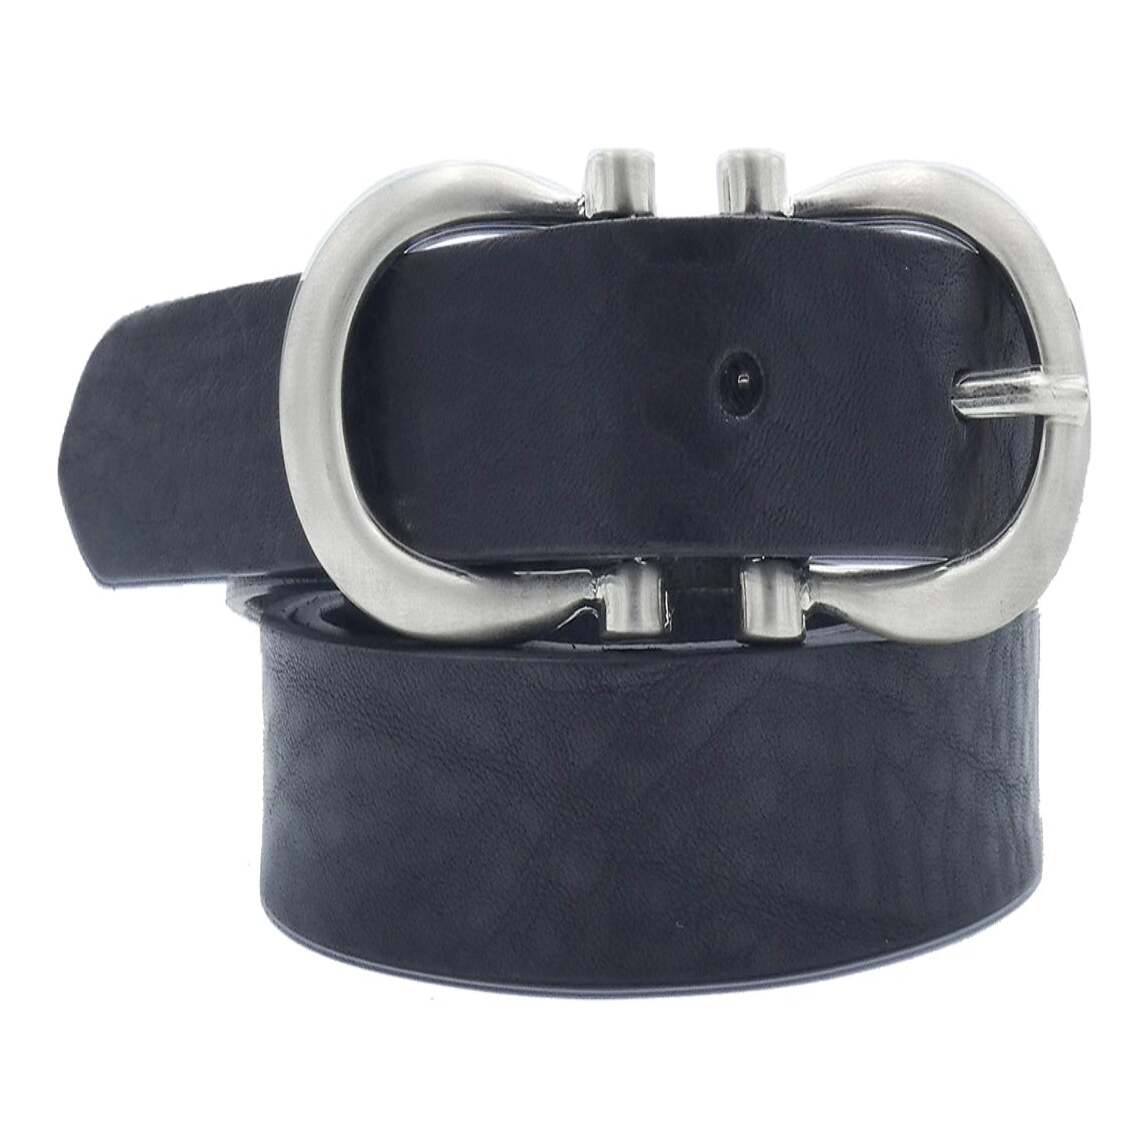 2.5cm Degas leather belt with satin nickel zamak buckle